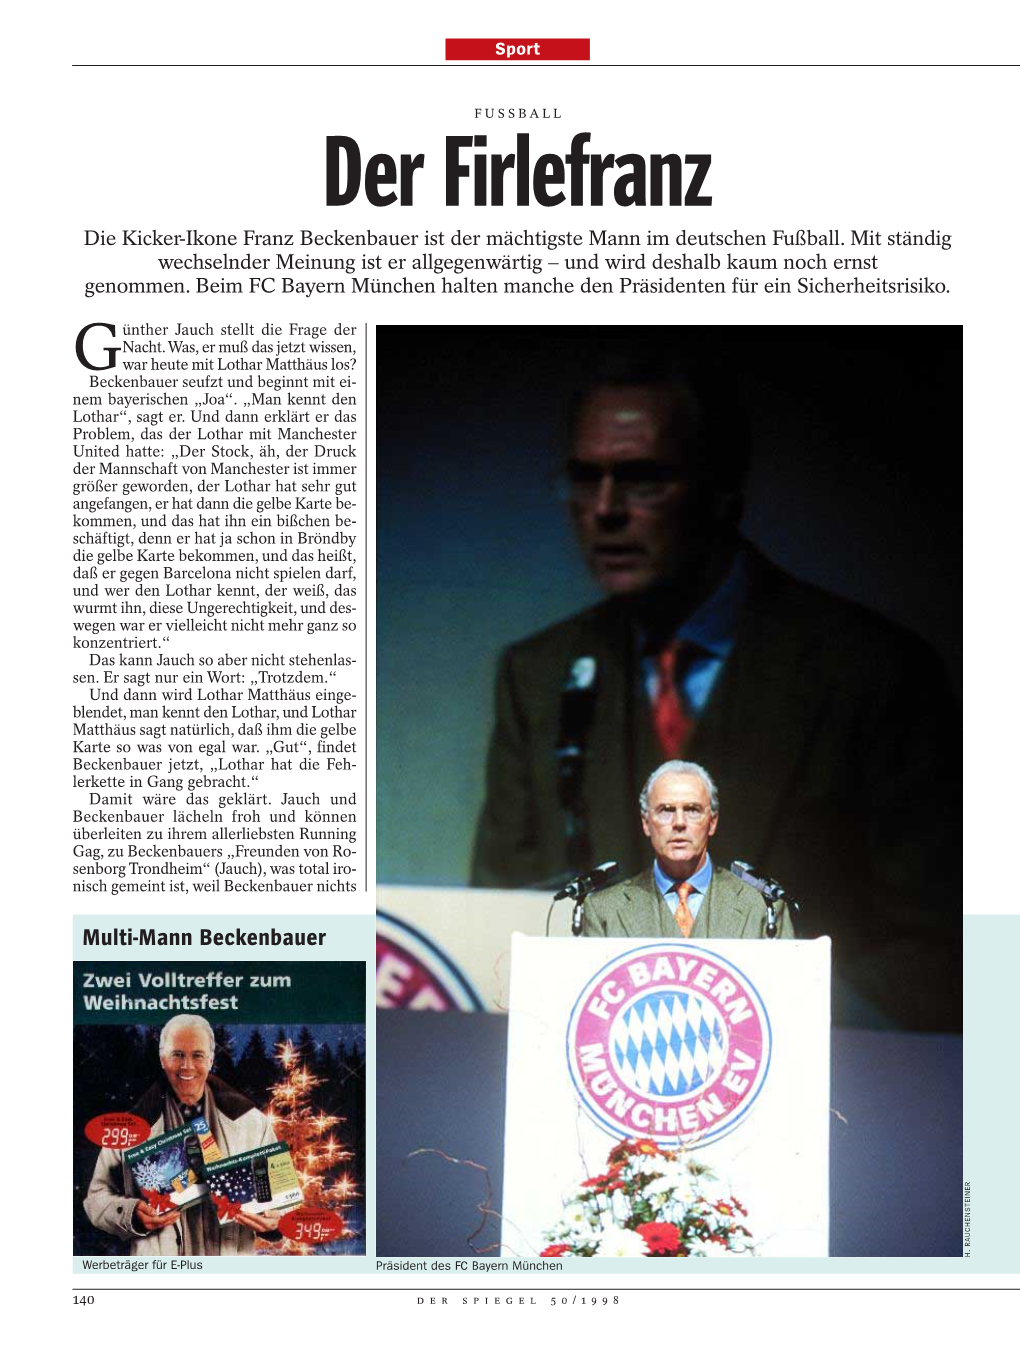 Der Firlefranz Die Kicker-Ikone Franz Beckenbauer Ist Der Mächtigste Mann Im Deutschen Fußball